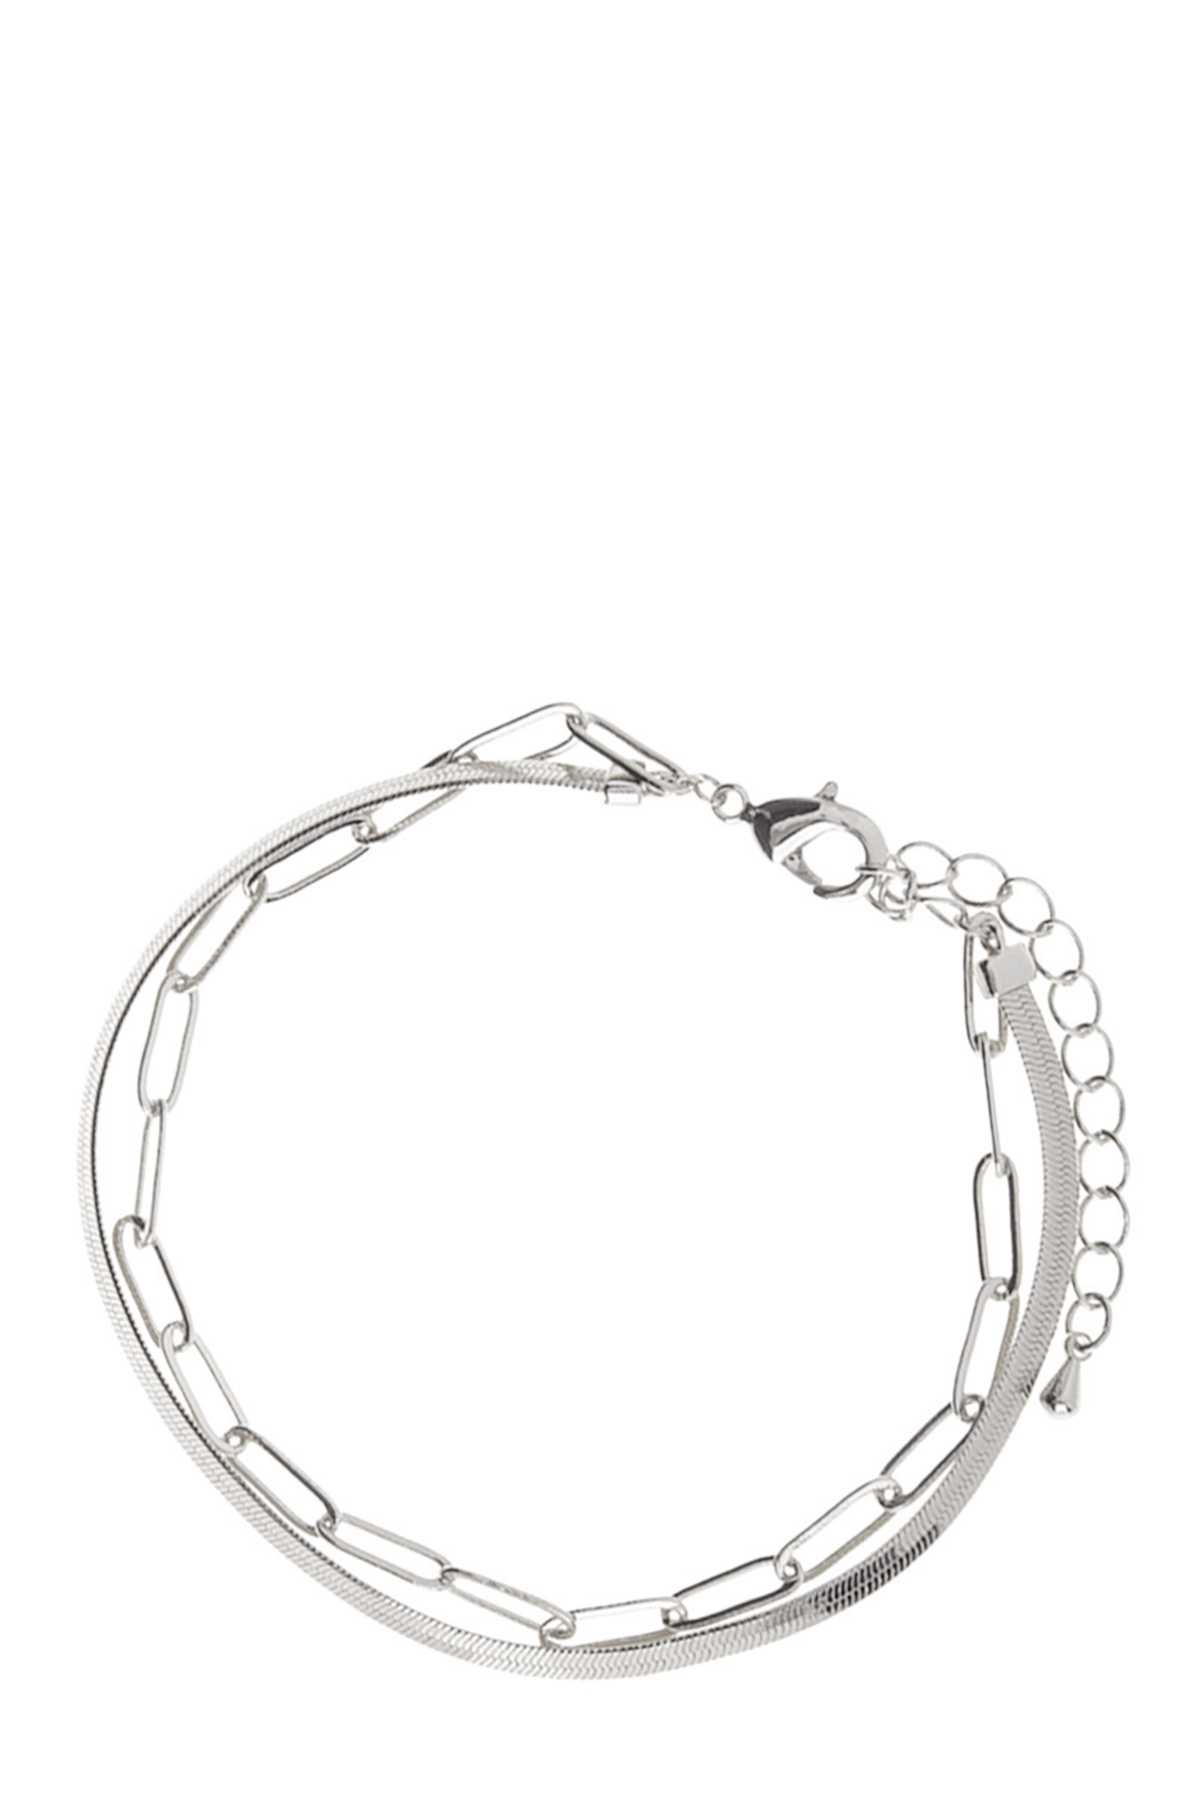 Herringbone Chain and Linked Chain Layered Bracelet